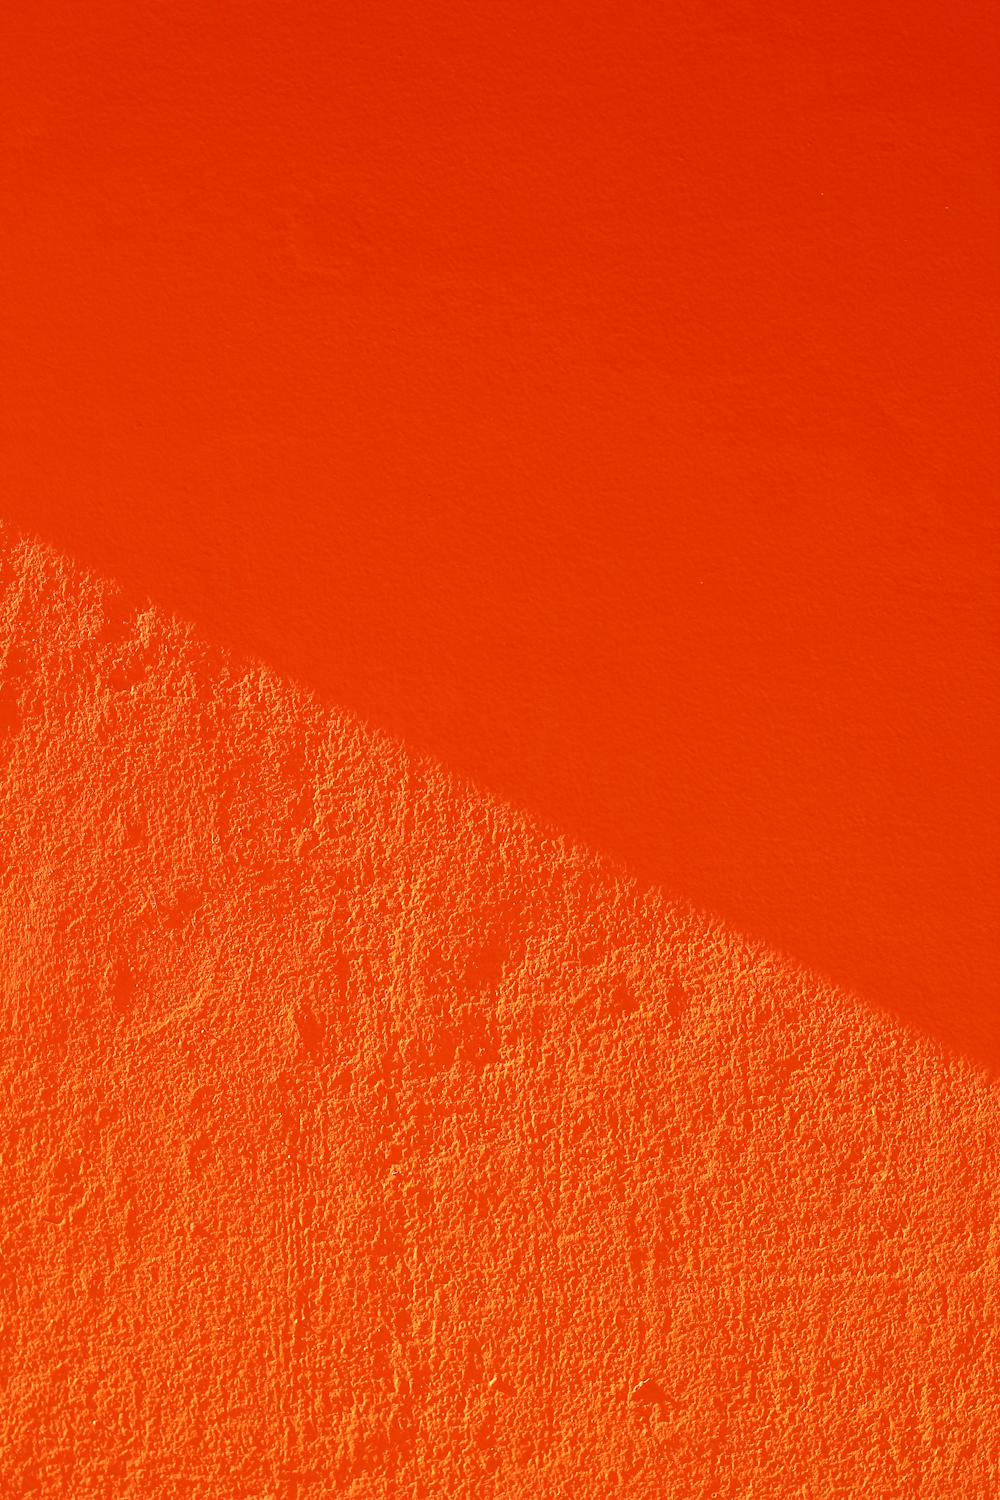 그림자가 있는 주황색 벽